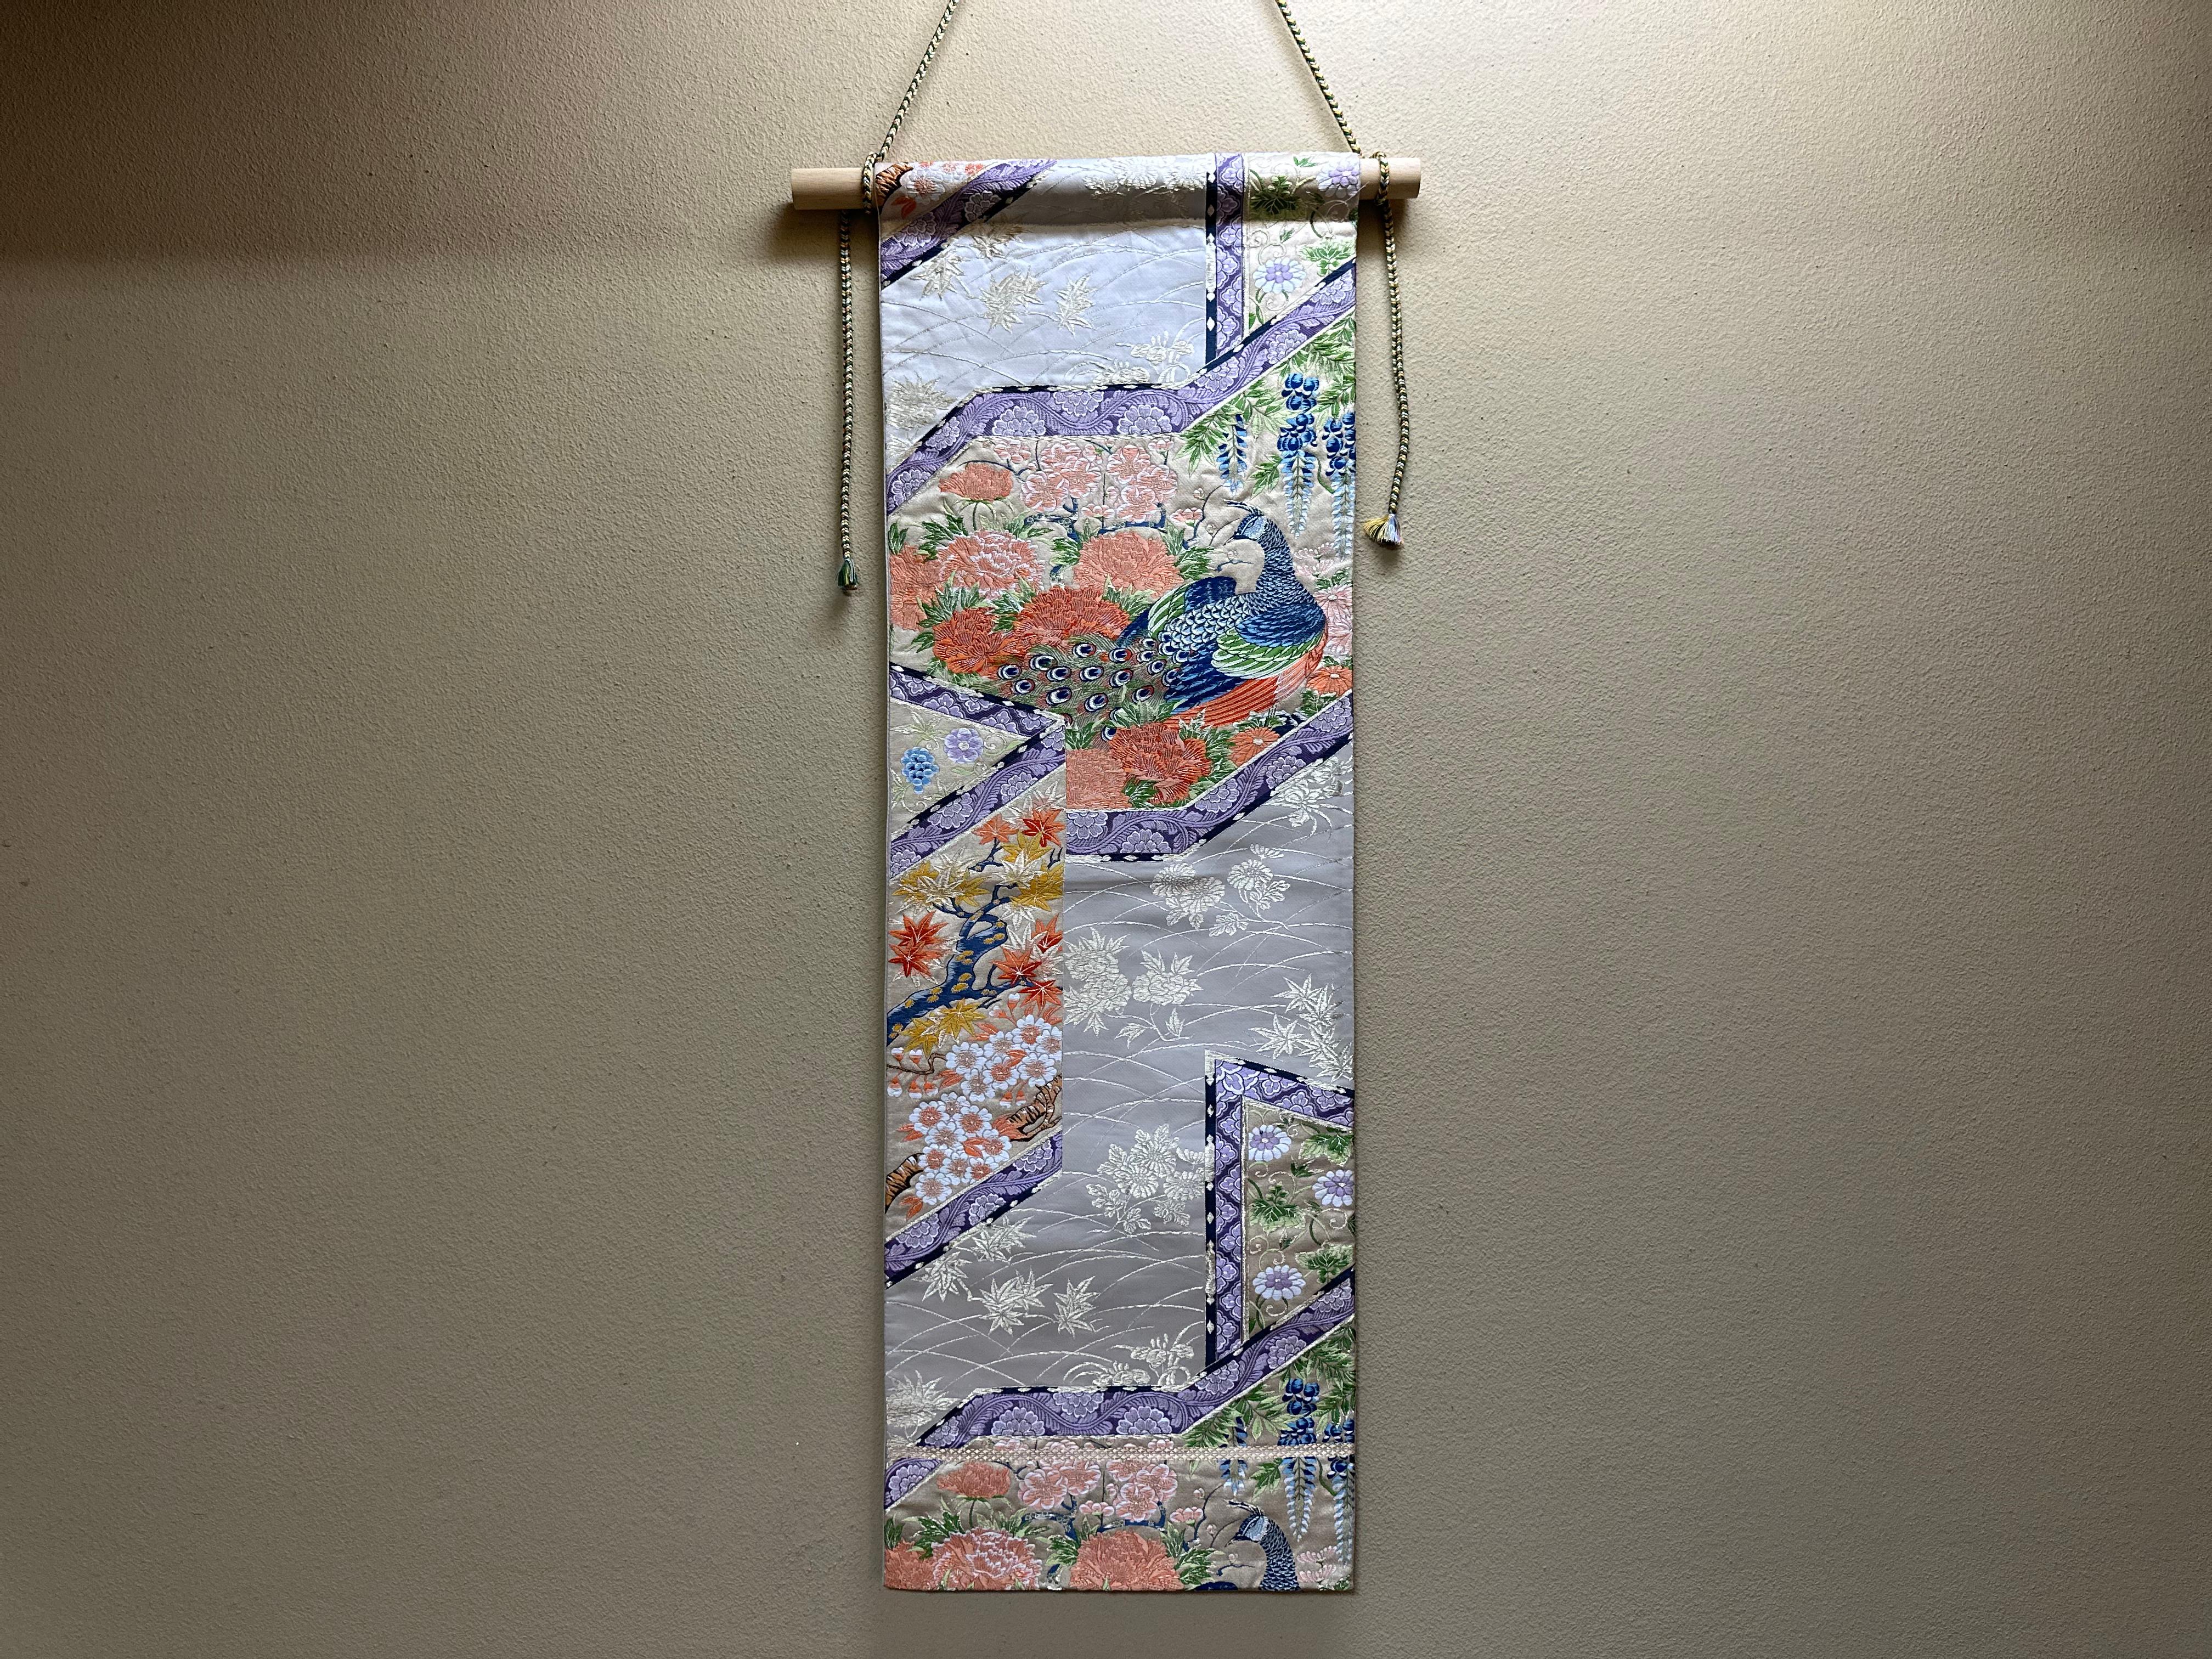 Dieser japanische Kimono-Wandteppich ist der einzige seiner Art auf der Welt. Es wurde von japanischen Handwerkern sorgfältig und akribisch bestickt.

 Wir sind stolz darauf, diesen Kimono-Wandteppich präsentieren zu können, der mit Pfauen und